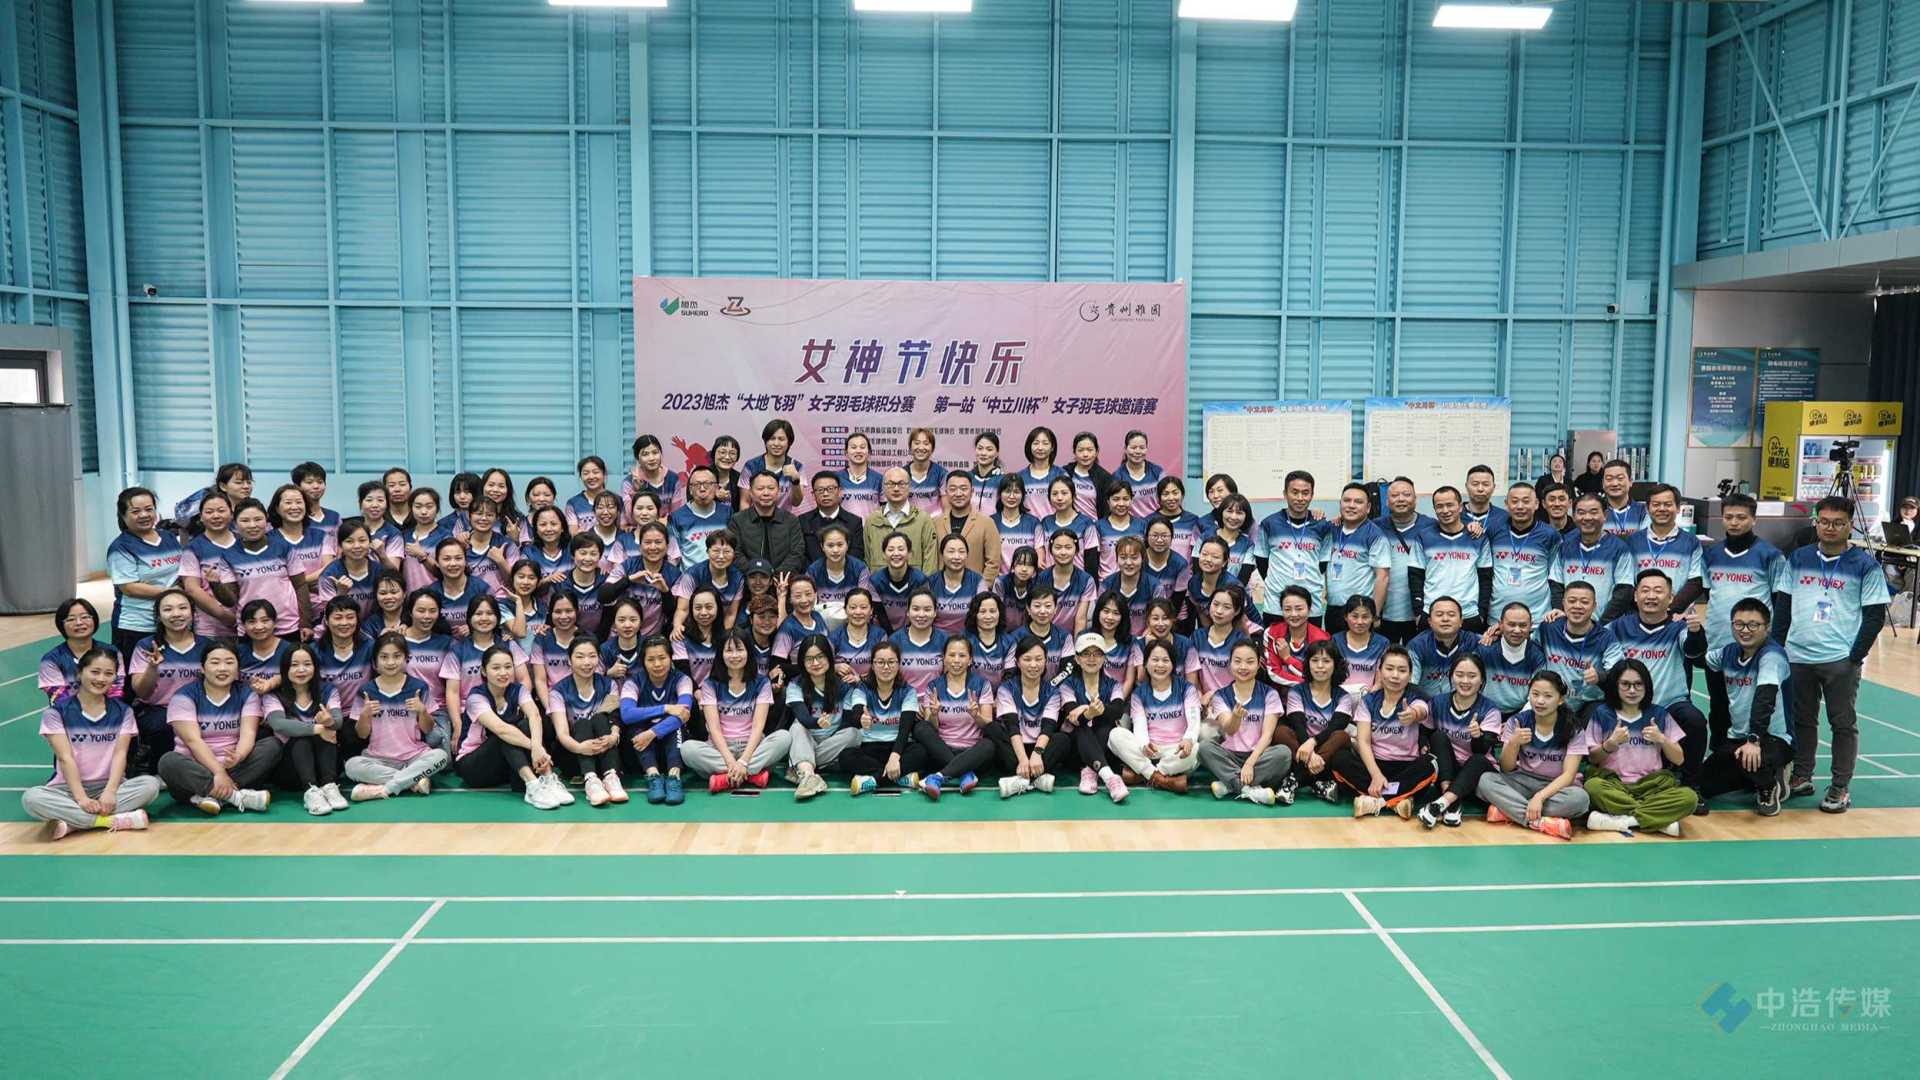 2023旭杰“大地飞羽”女子羽毛球积分赛 第一站“中立川杯”女子羽毛球邀请赛